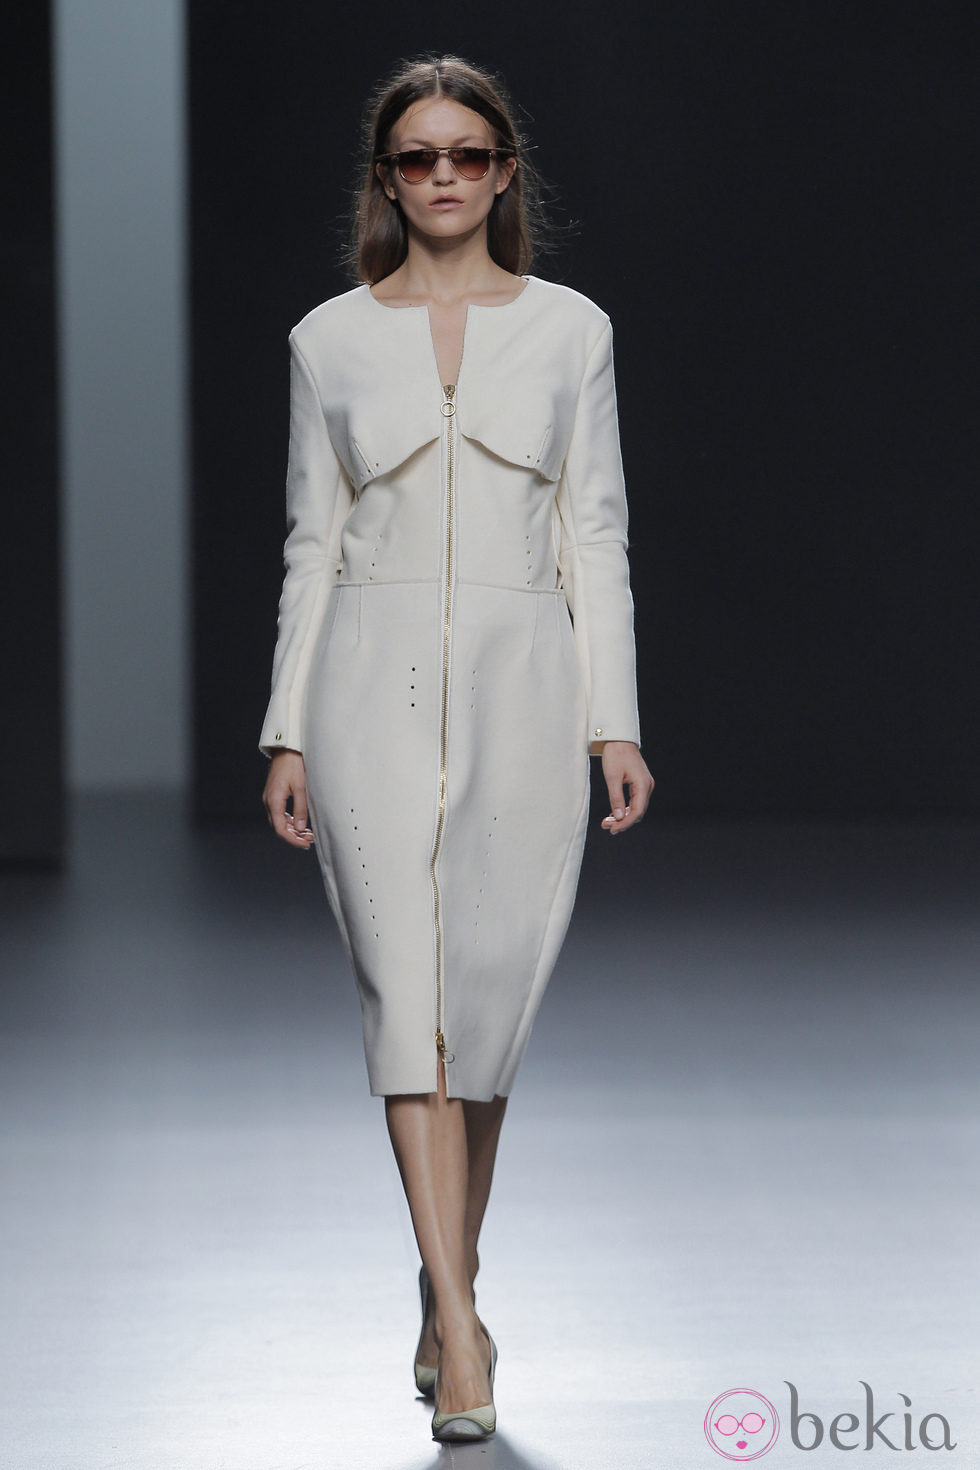 Vestido blanco de la colección otoño/invierno 2013/2014 de Martín Lamothe en Madrid Fashion Week